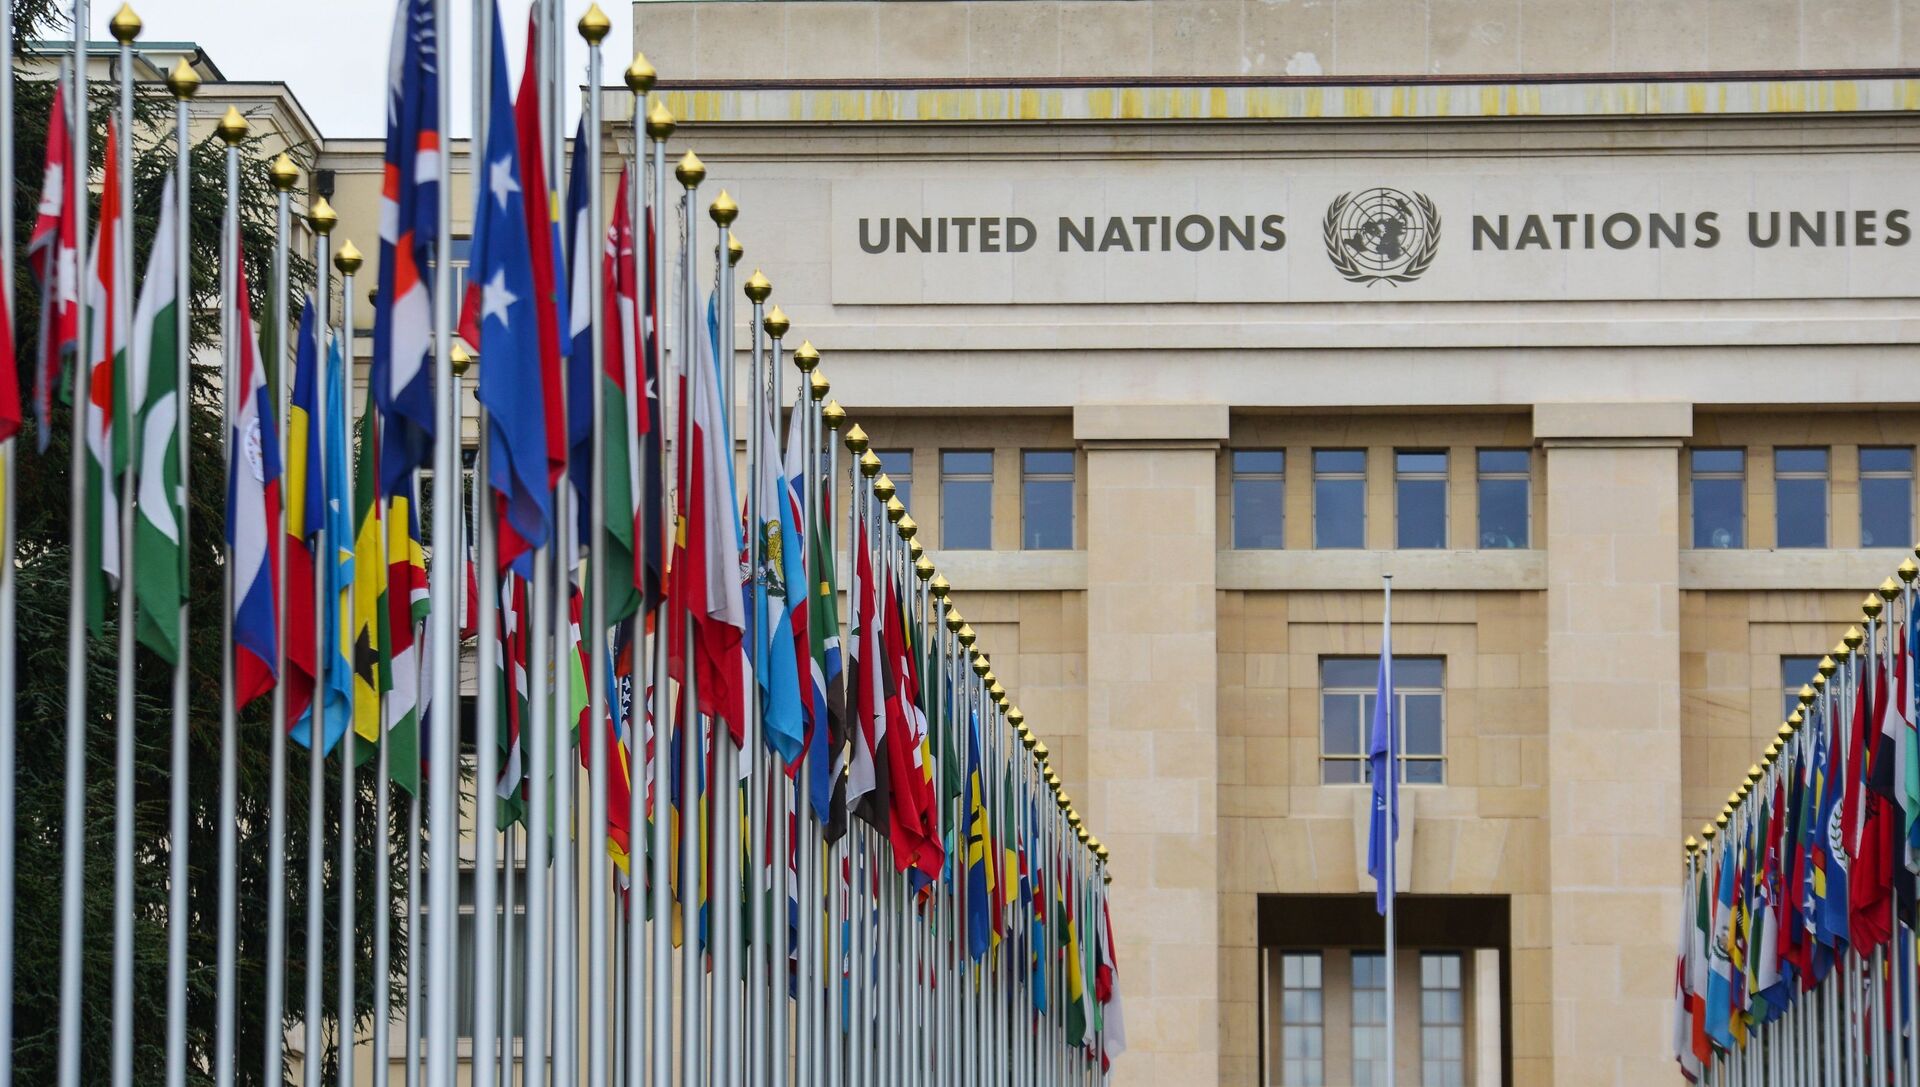 ллея флагов возле здания Организации Объединённых Наций (ООН) в Женеве - РИА Новости, 1920, 08.09.2020